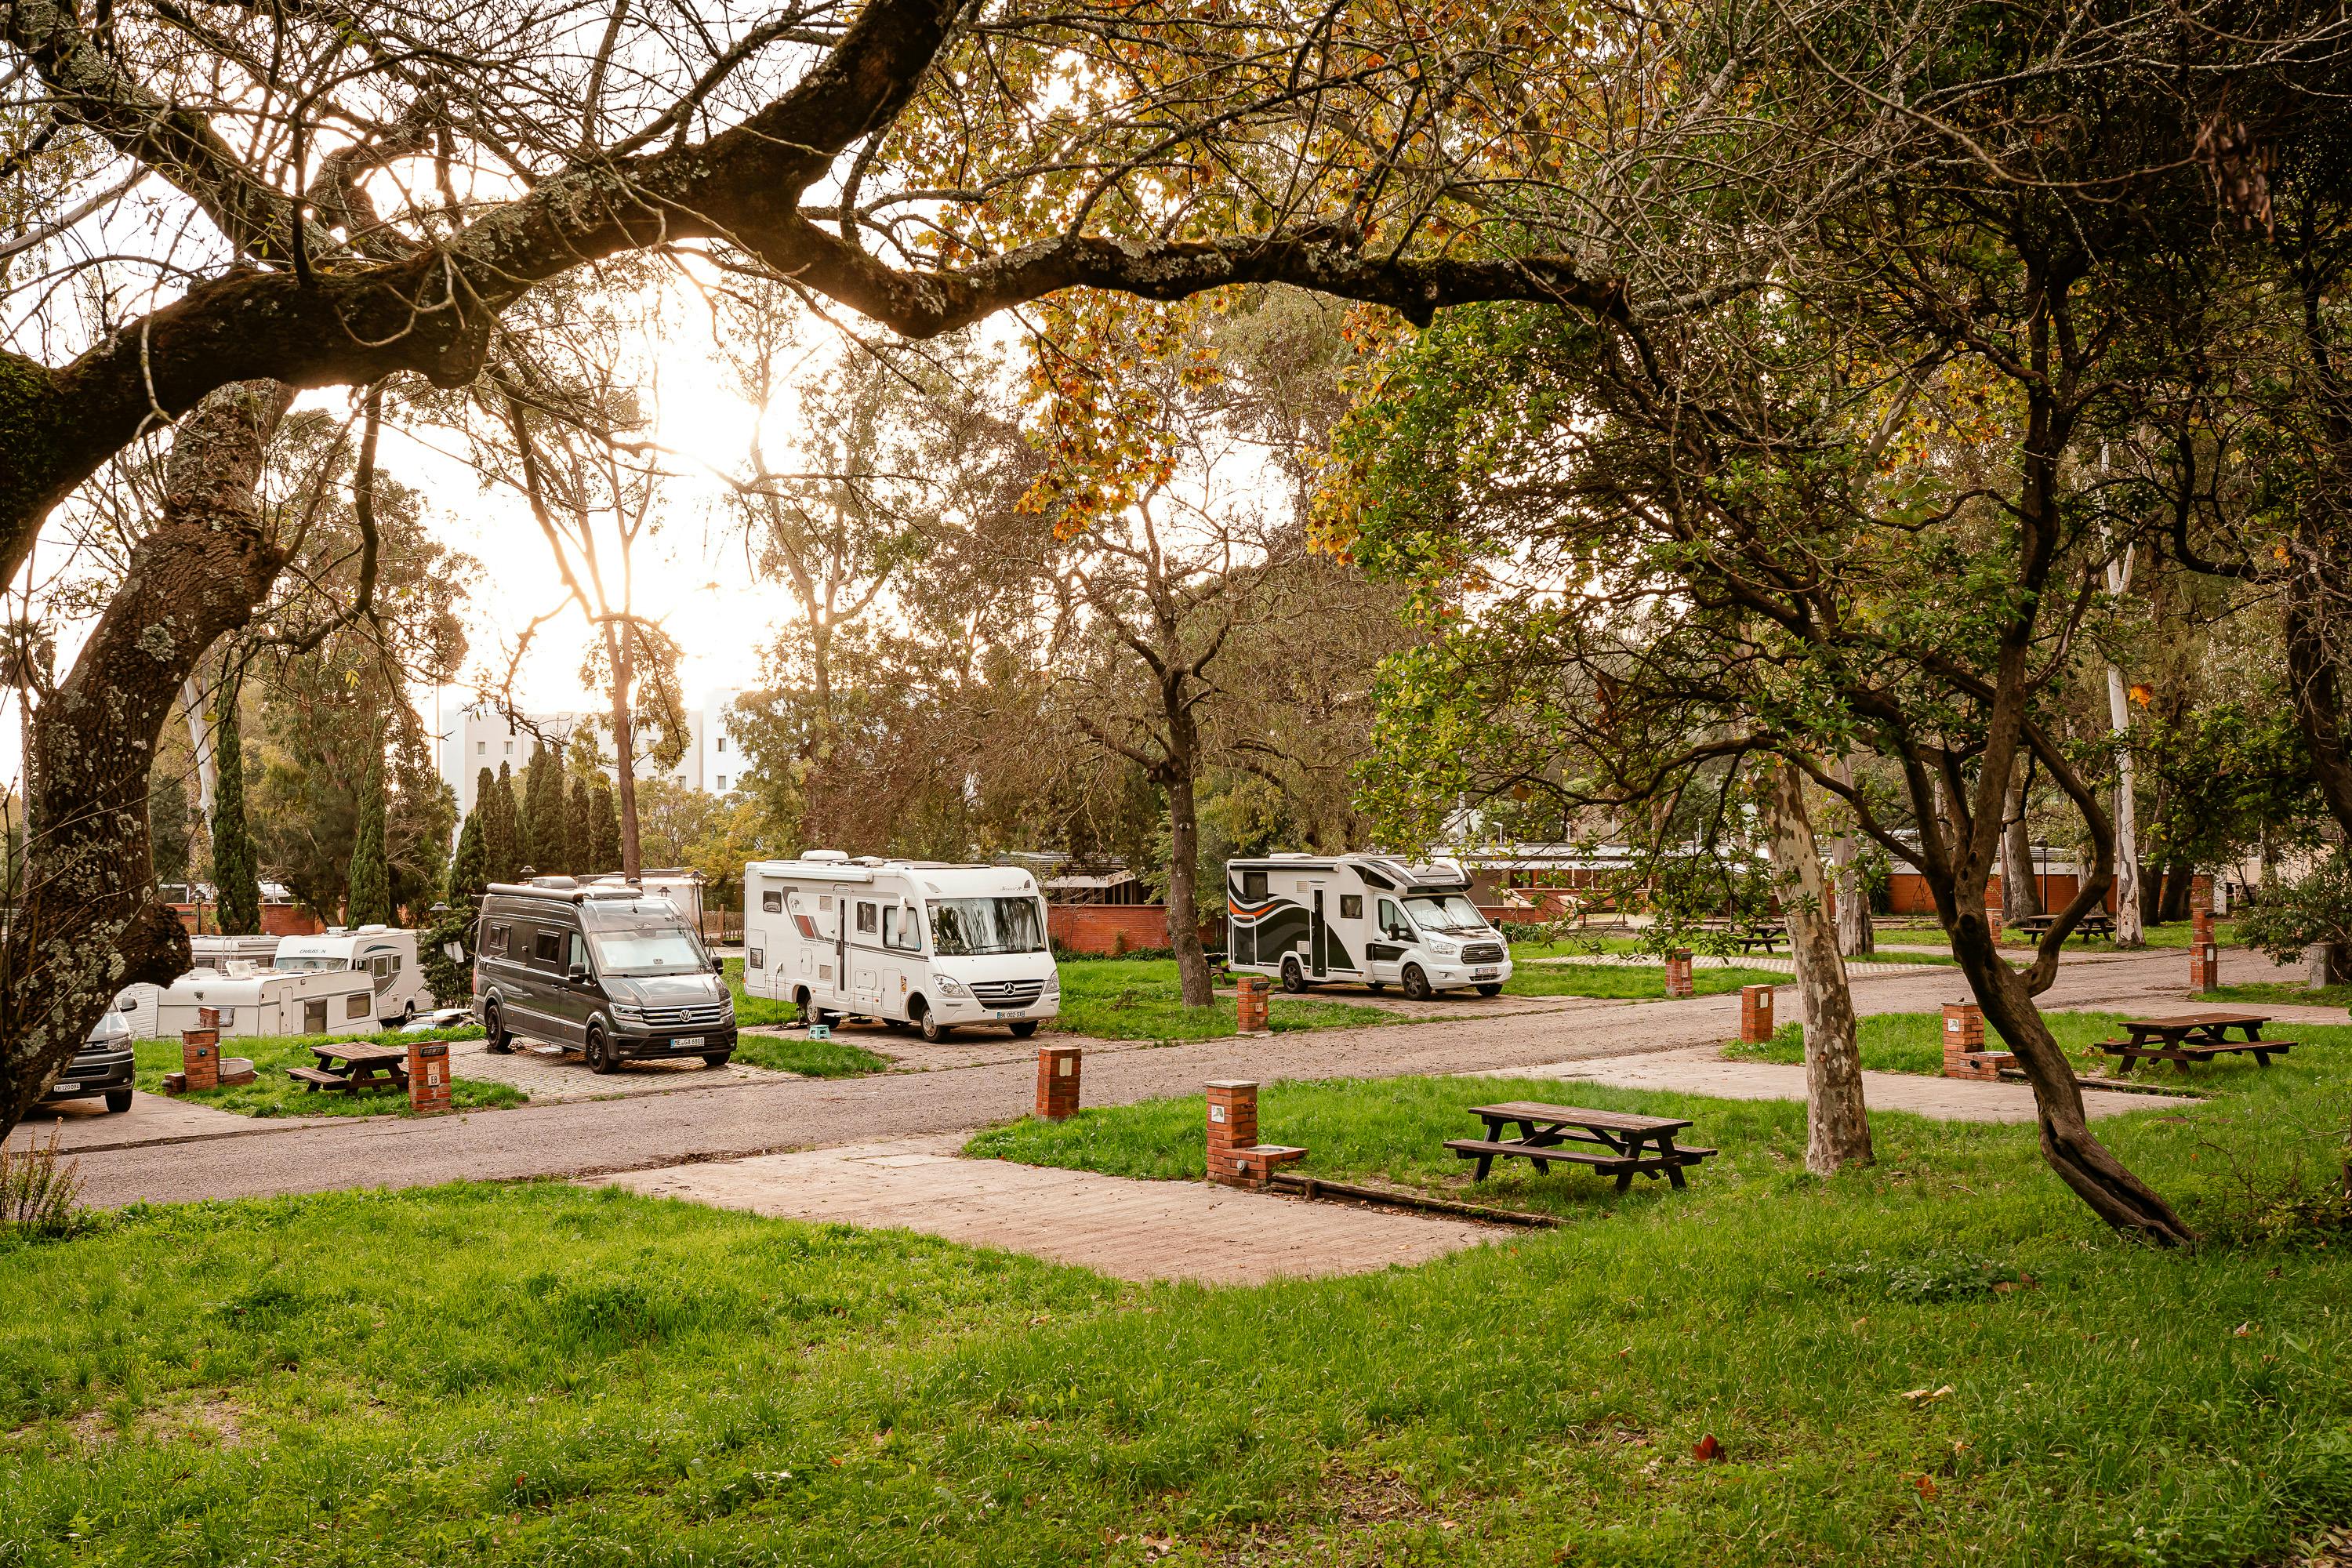 Lisboa Camping ofrece campings totalmente equipados y preparados para autocaravanas cerca de Lisboa